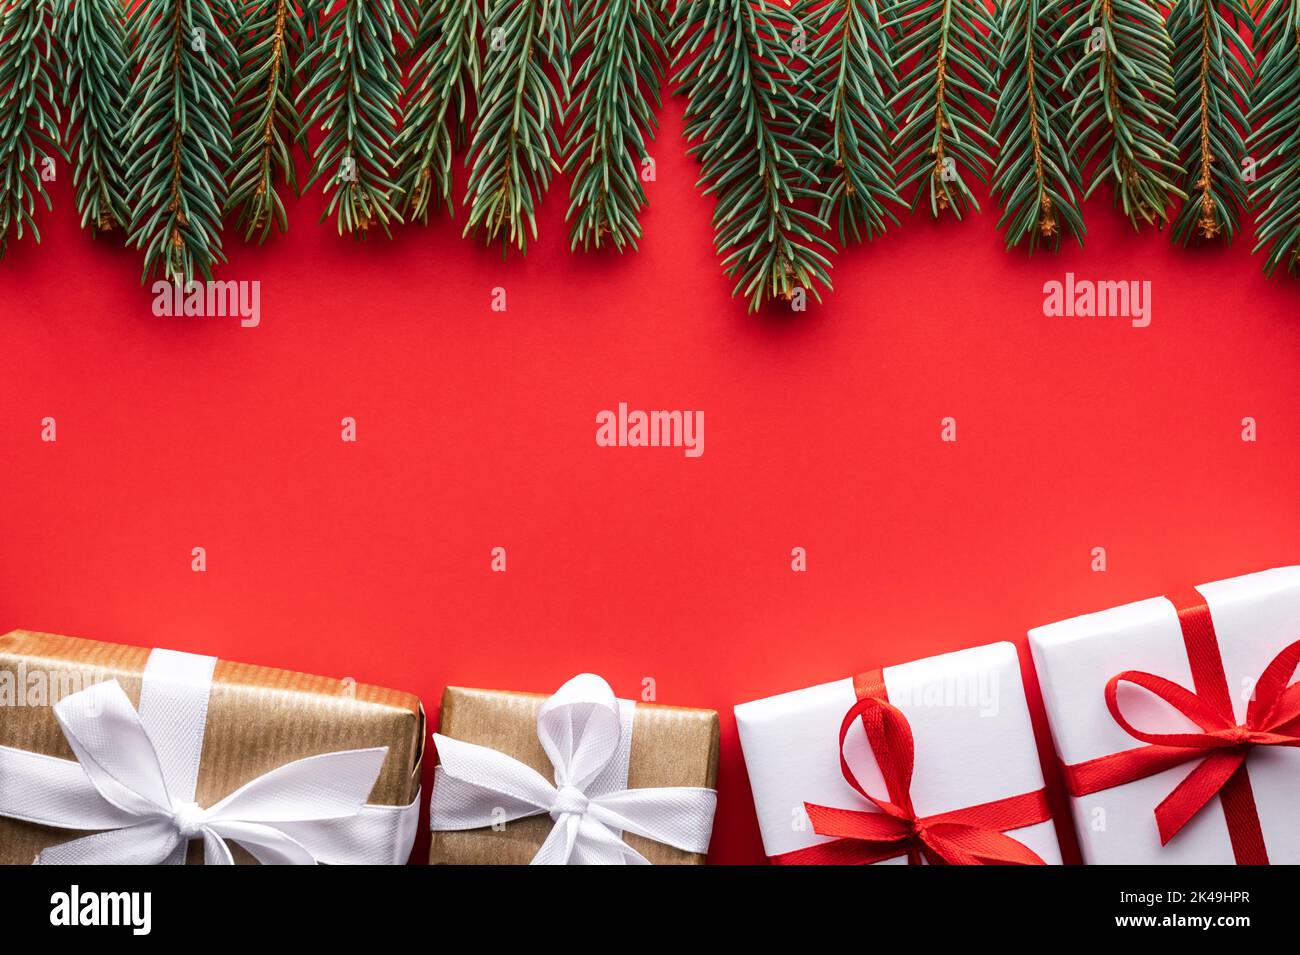 Fond de Noël créatif avec boîtes cadeaux de Noël et brindilles de pin sur fond rouge. Flat lay, vue de dessus, espace de copie Banque D'Images